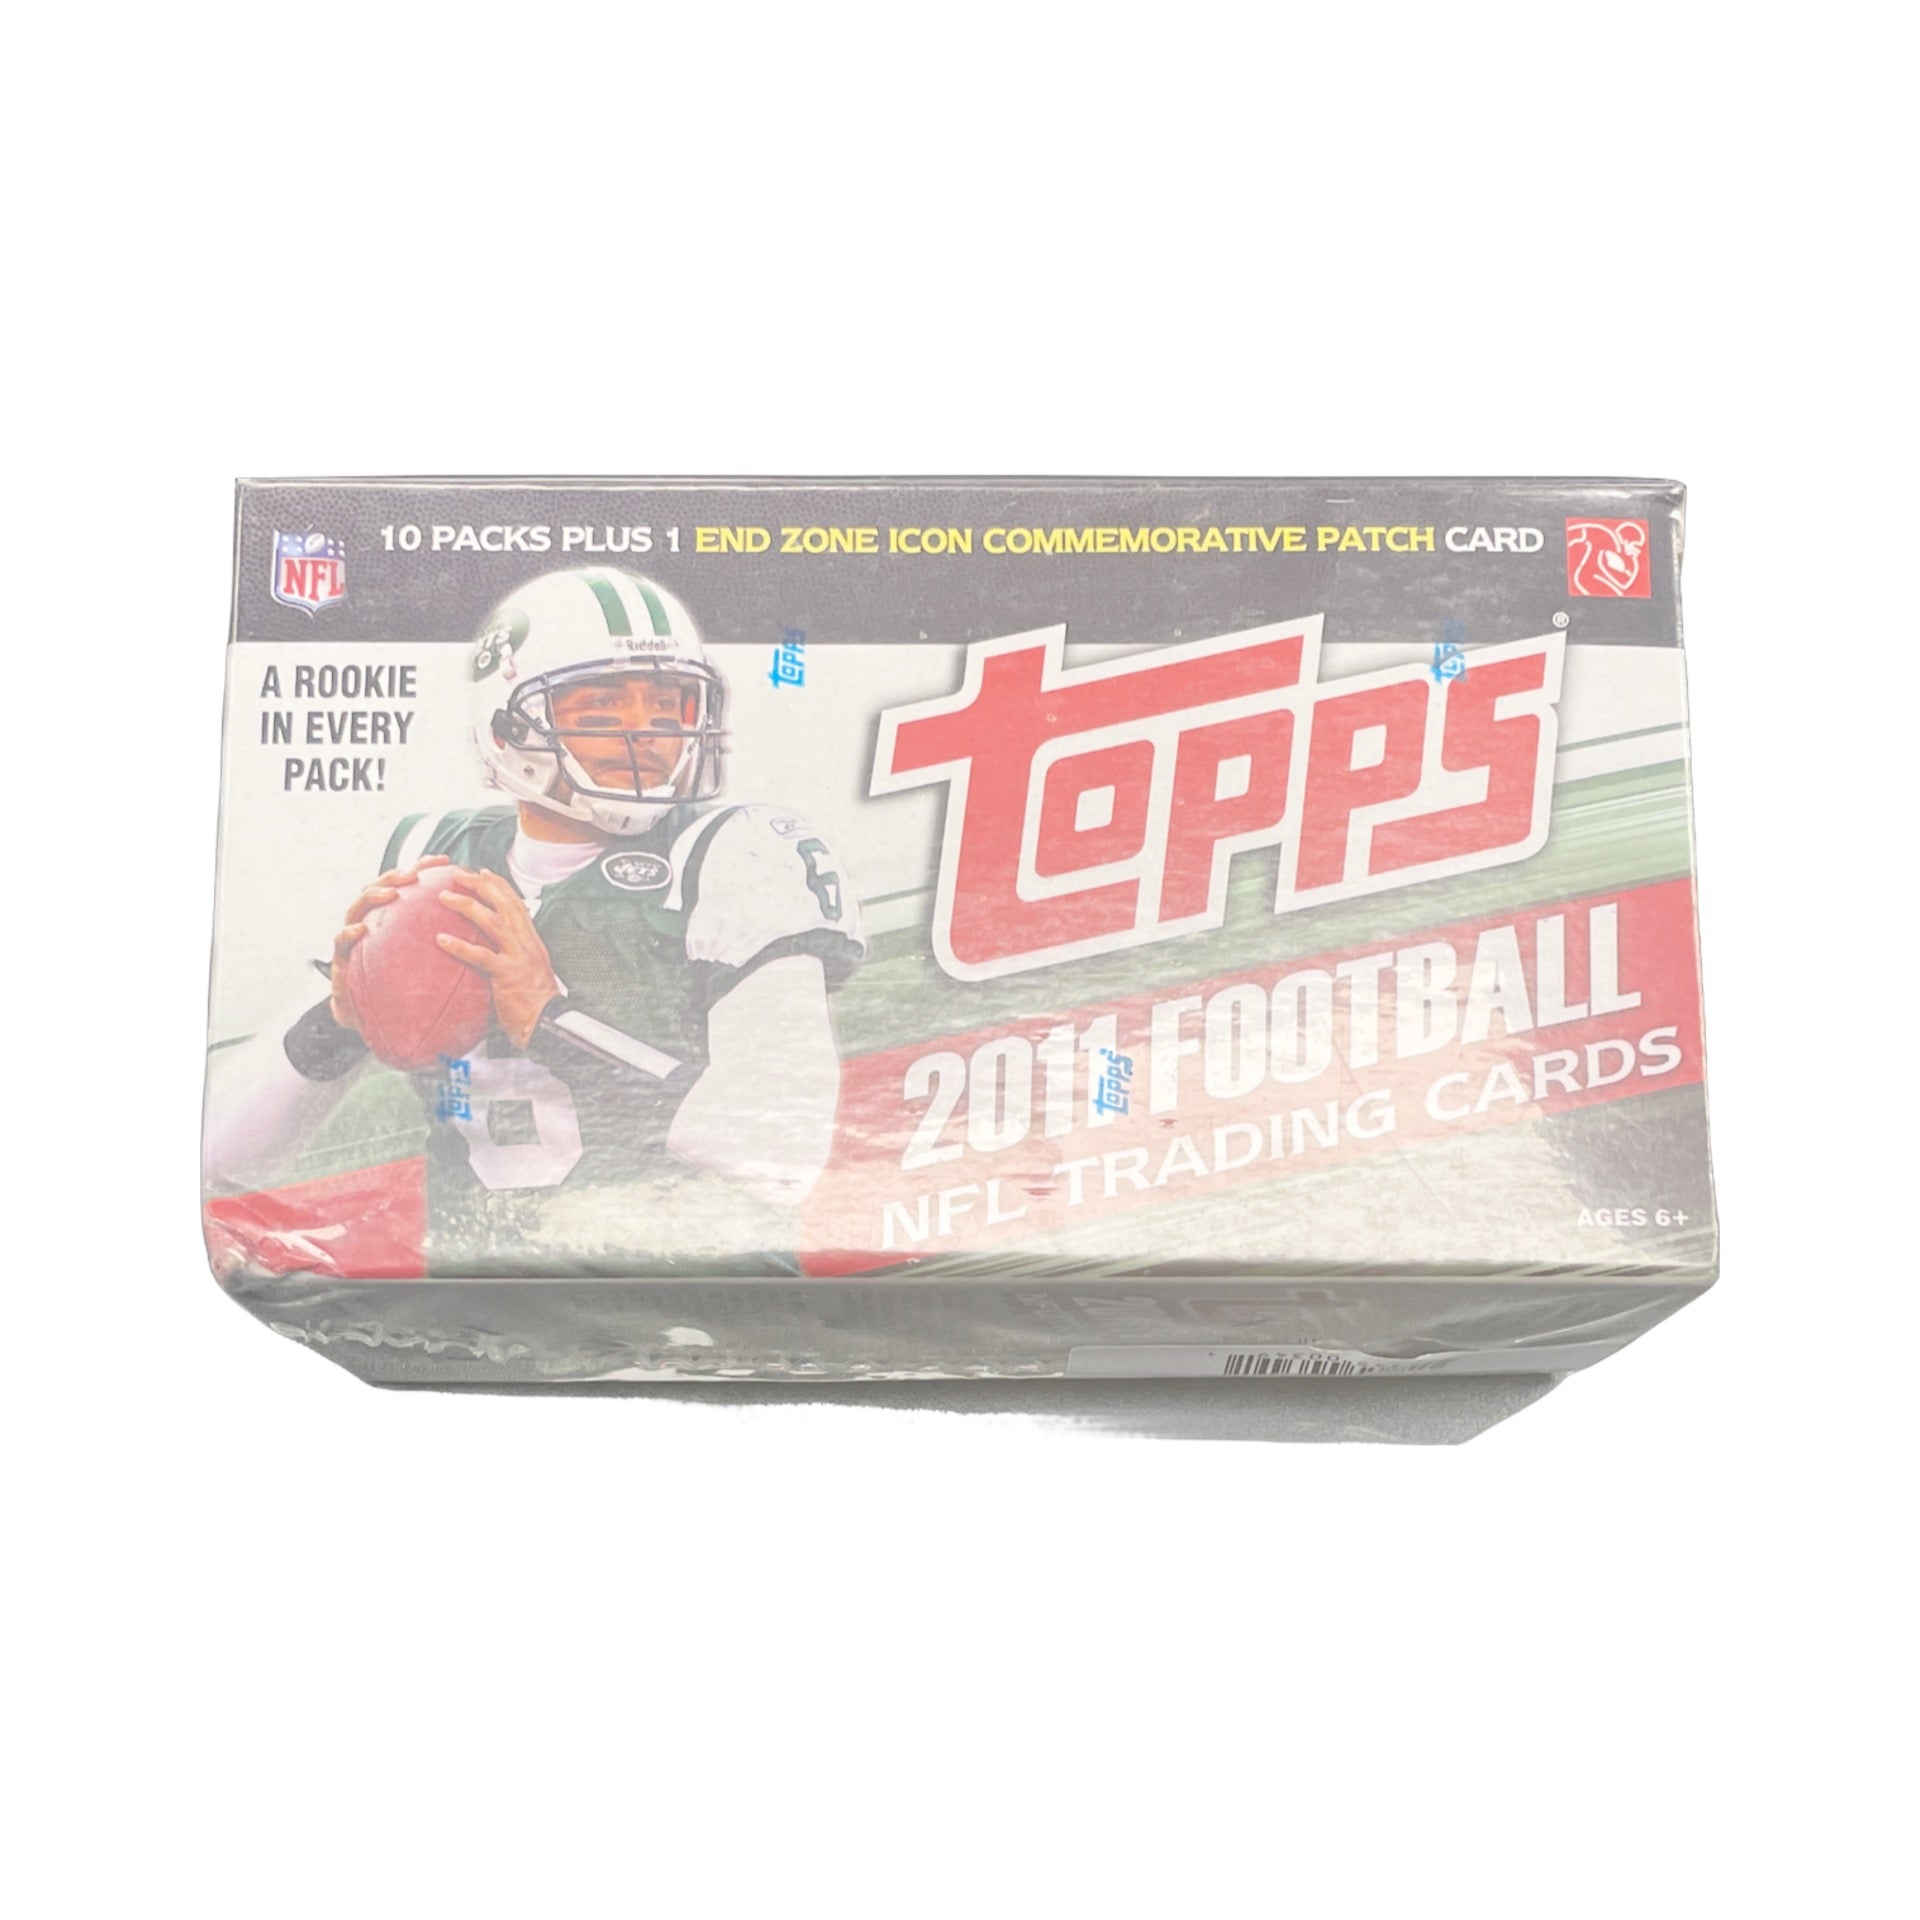 2011 Topps Football NFL Trading cards Blaster